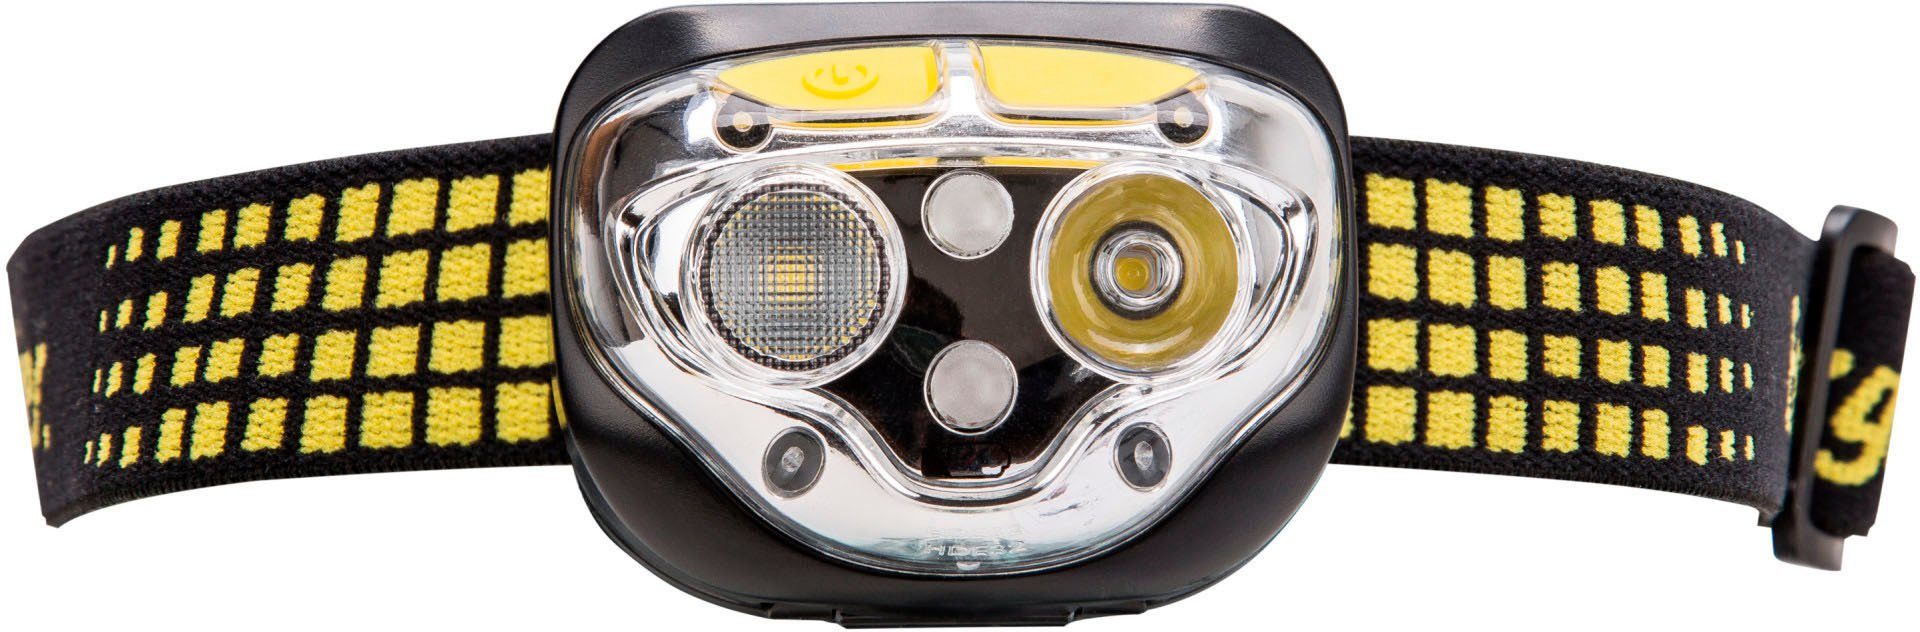 LED Vision Energizer 450 Stirnlampe Ultra Lumen